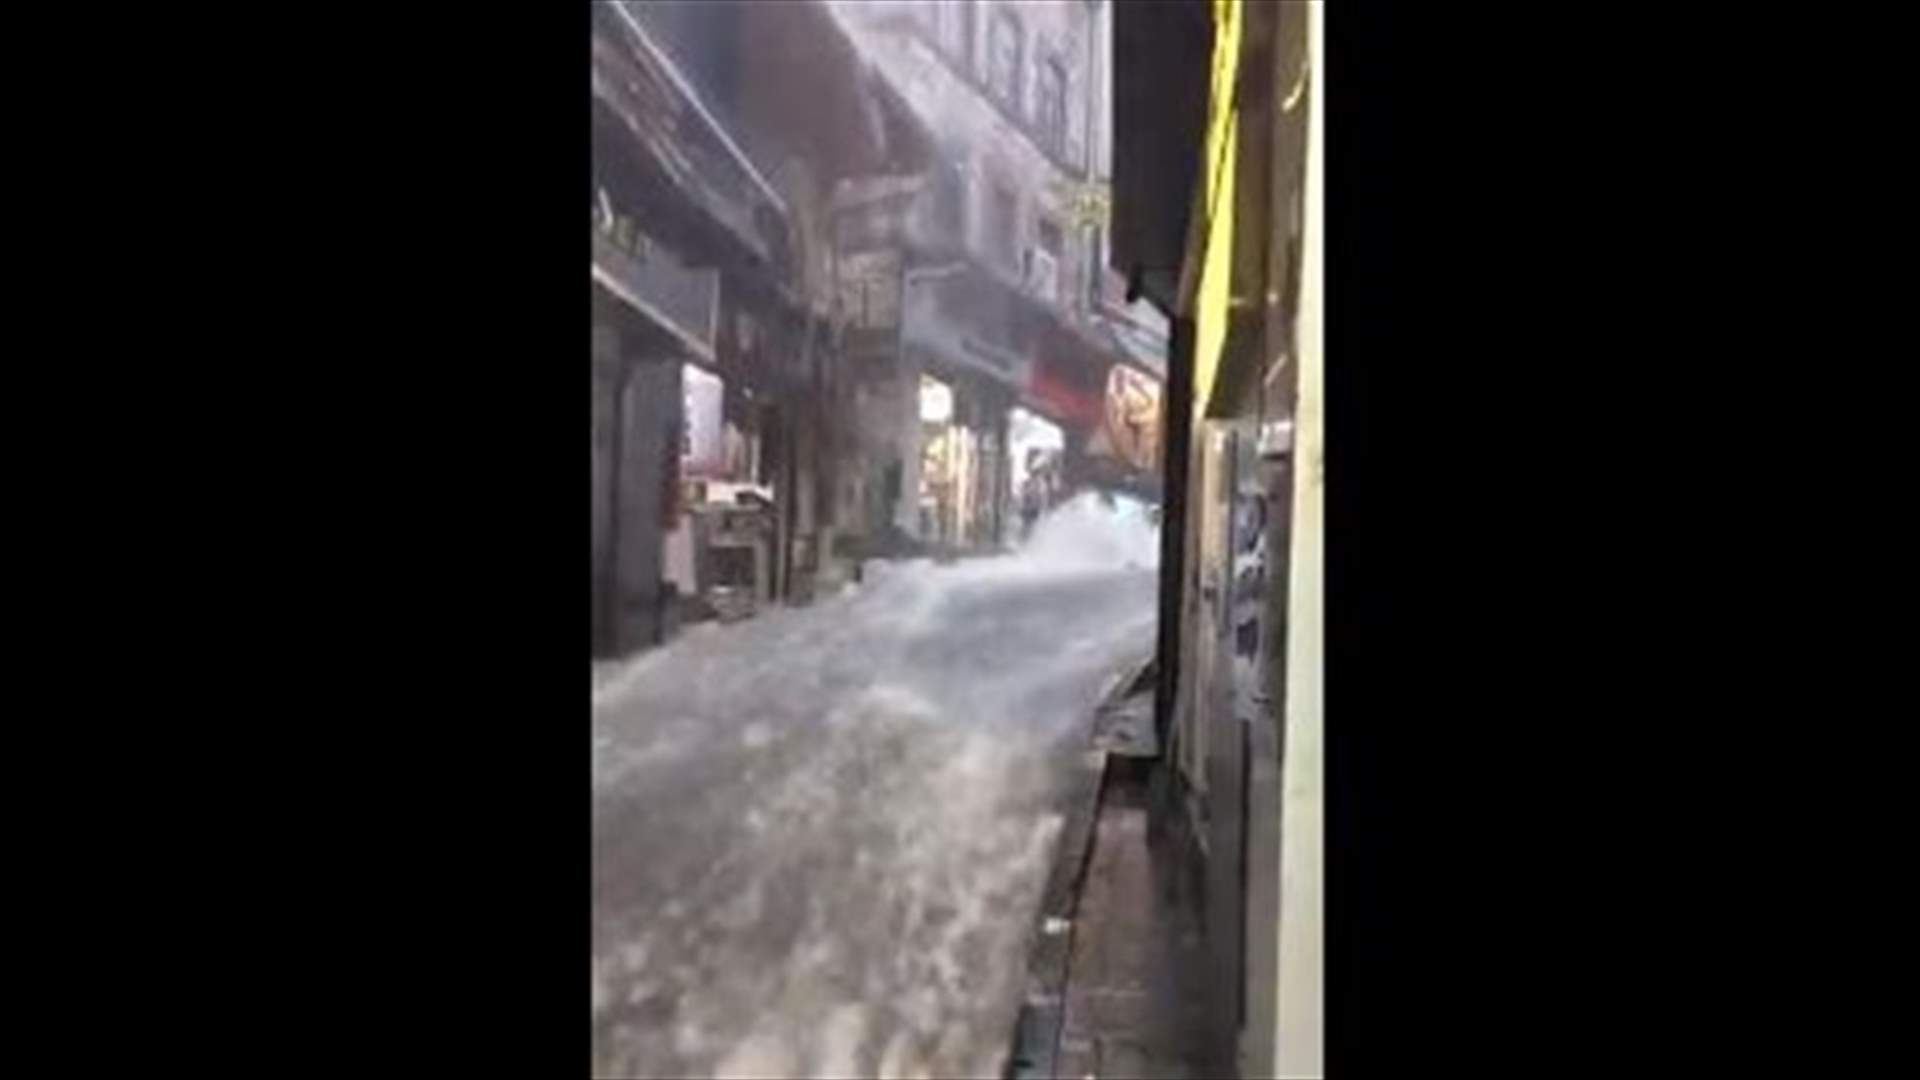 Heavy downpours wreak havoc in Istanbul, flooding historic Grand Bazaar